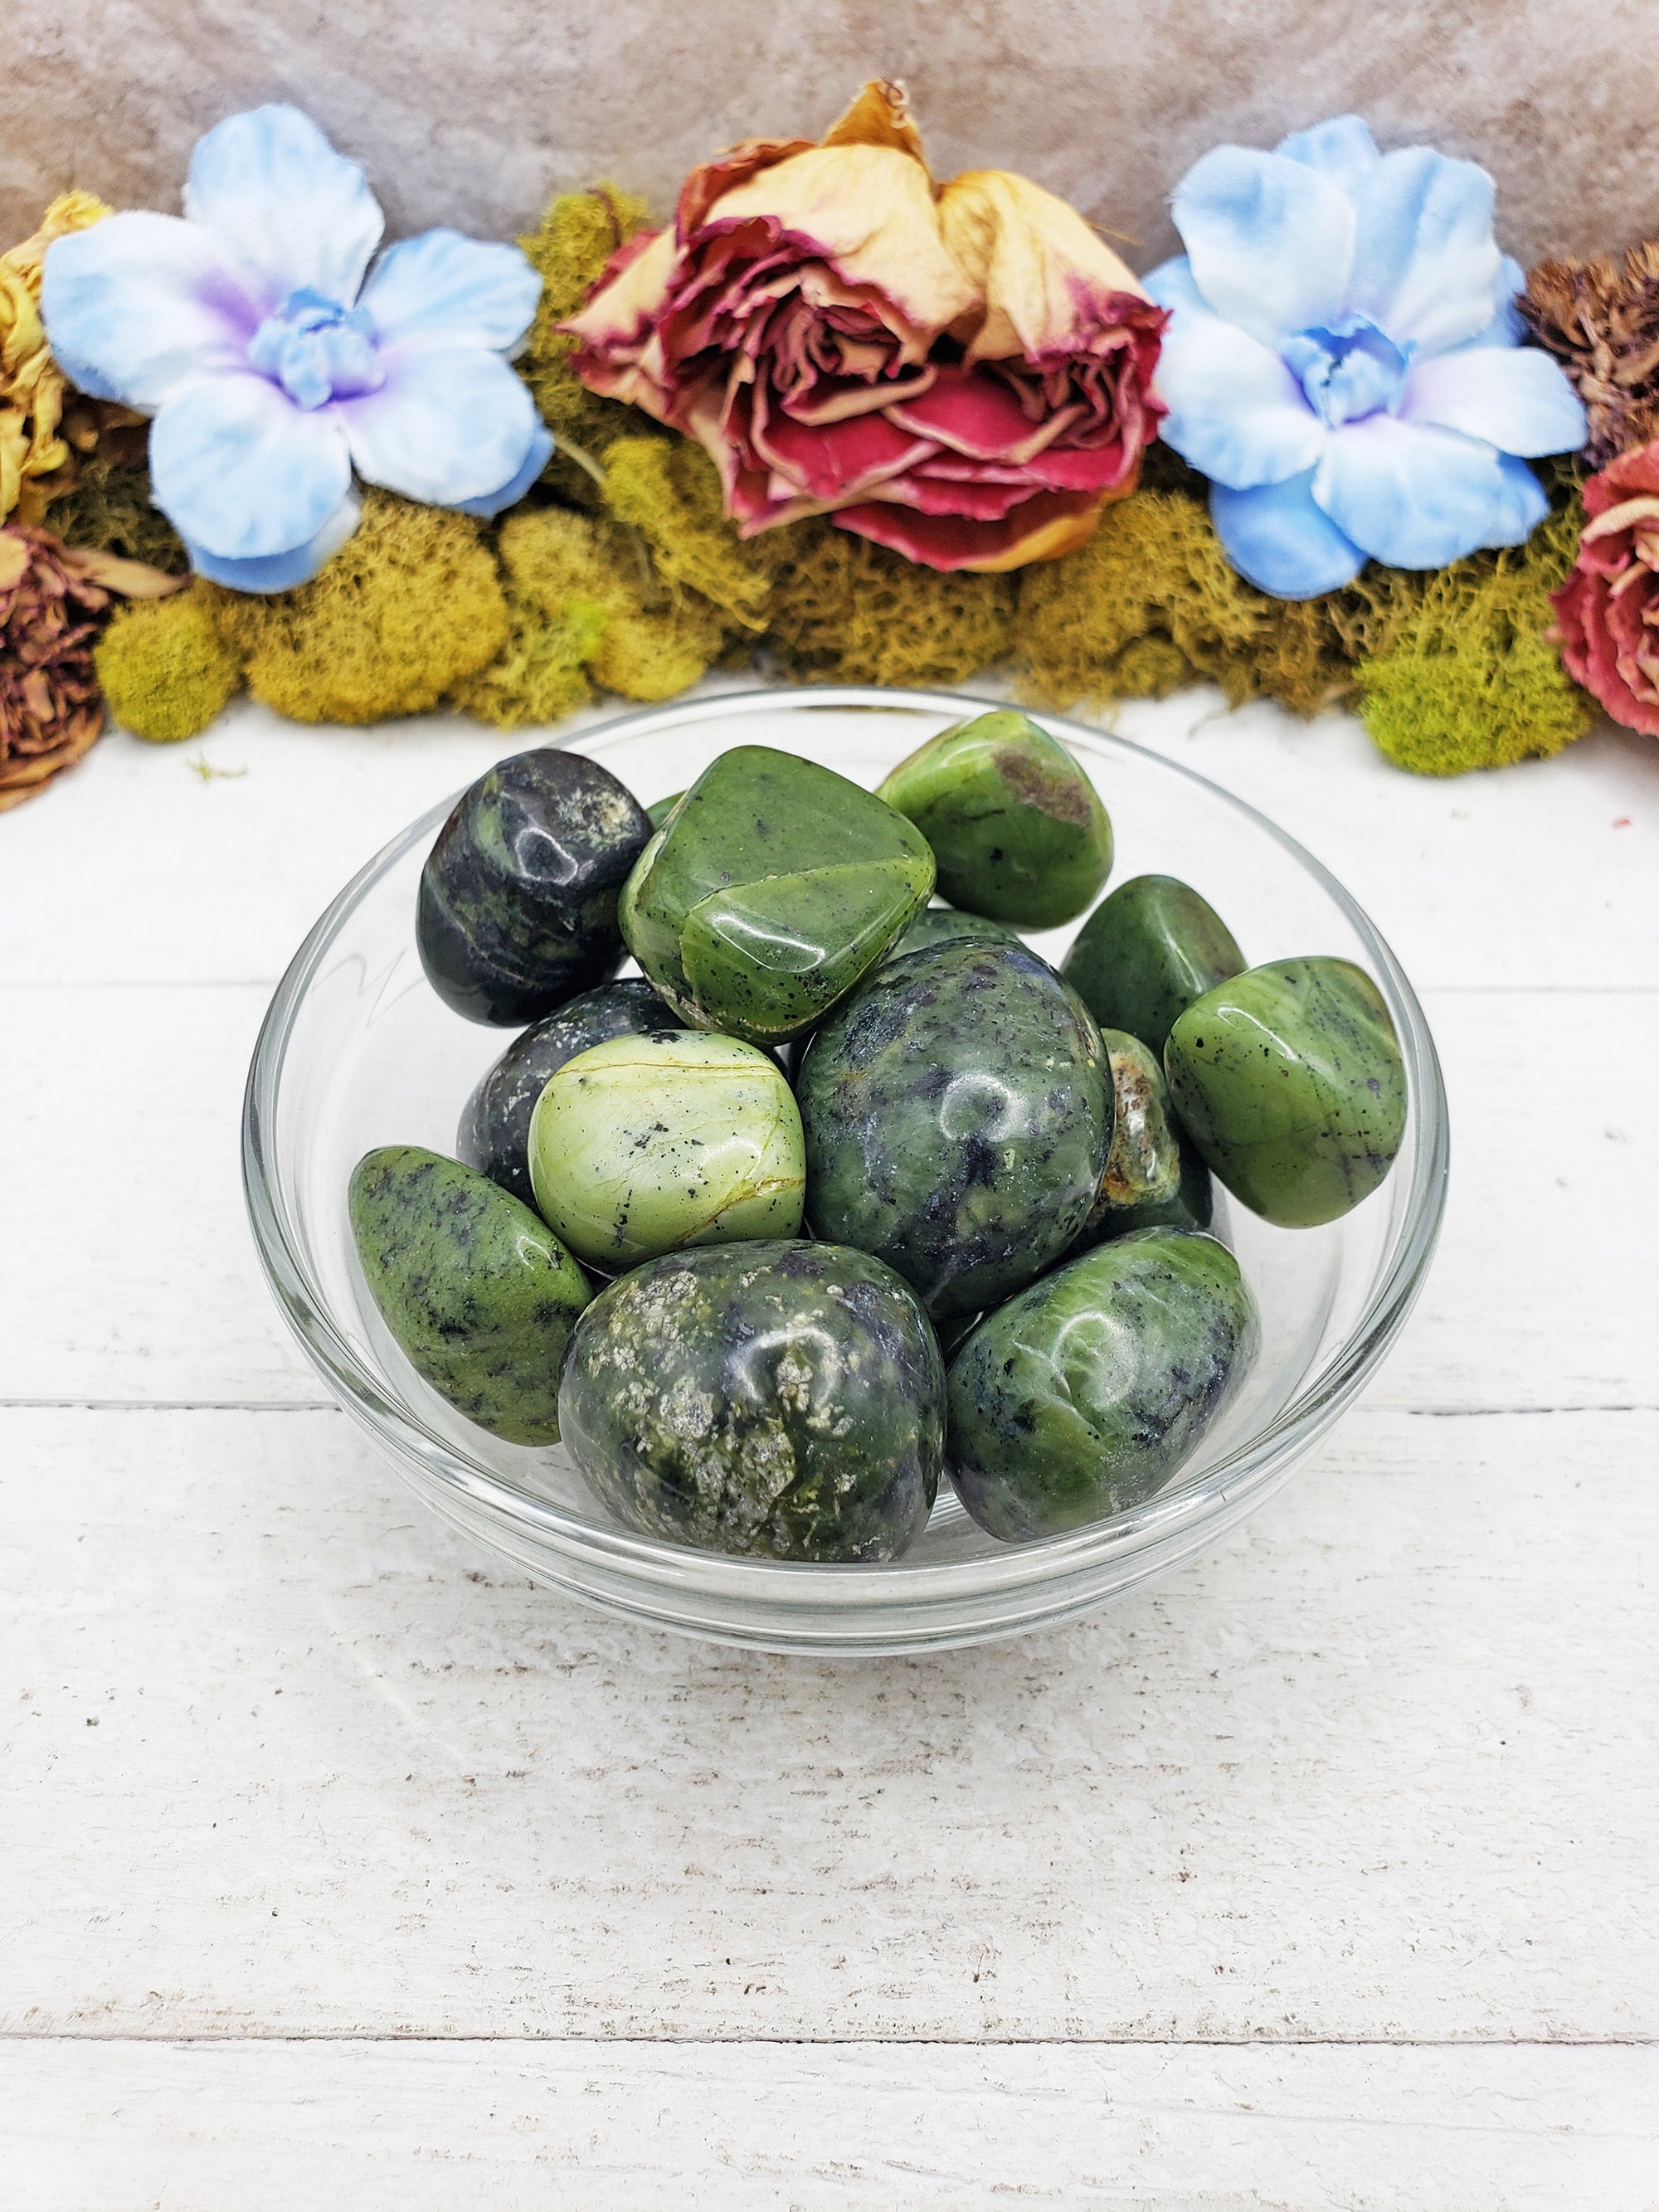 nephrite jade stones in bowl